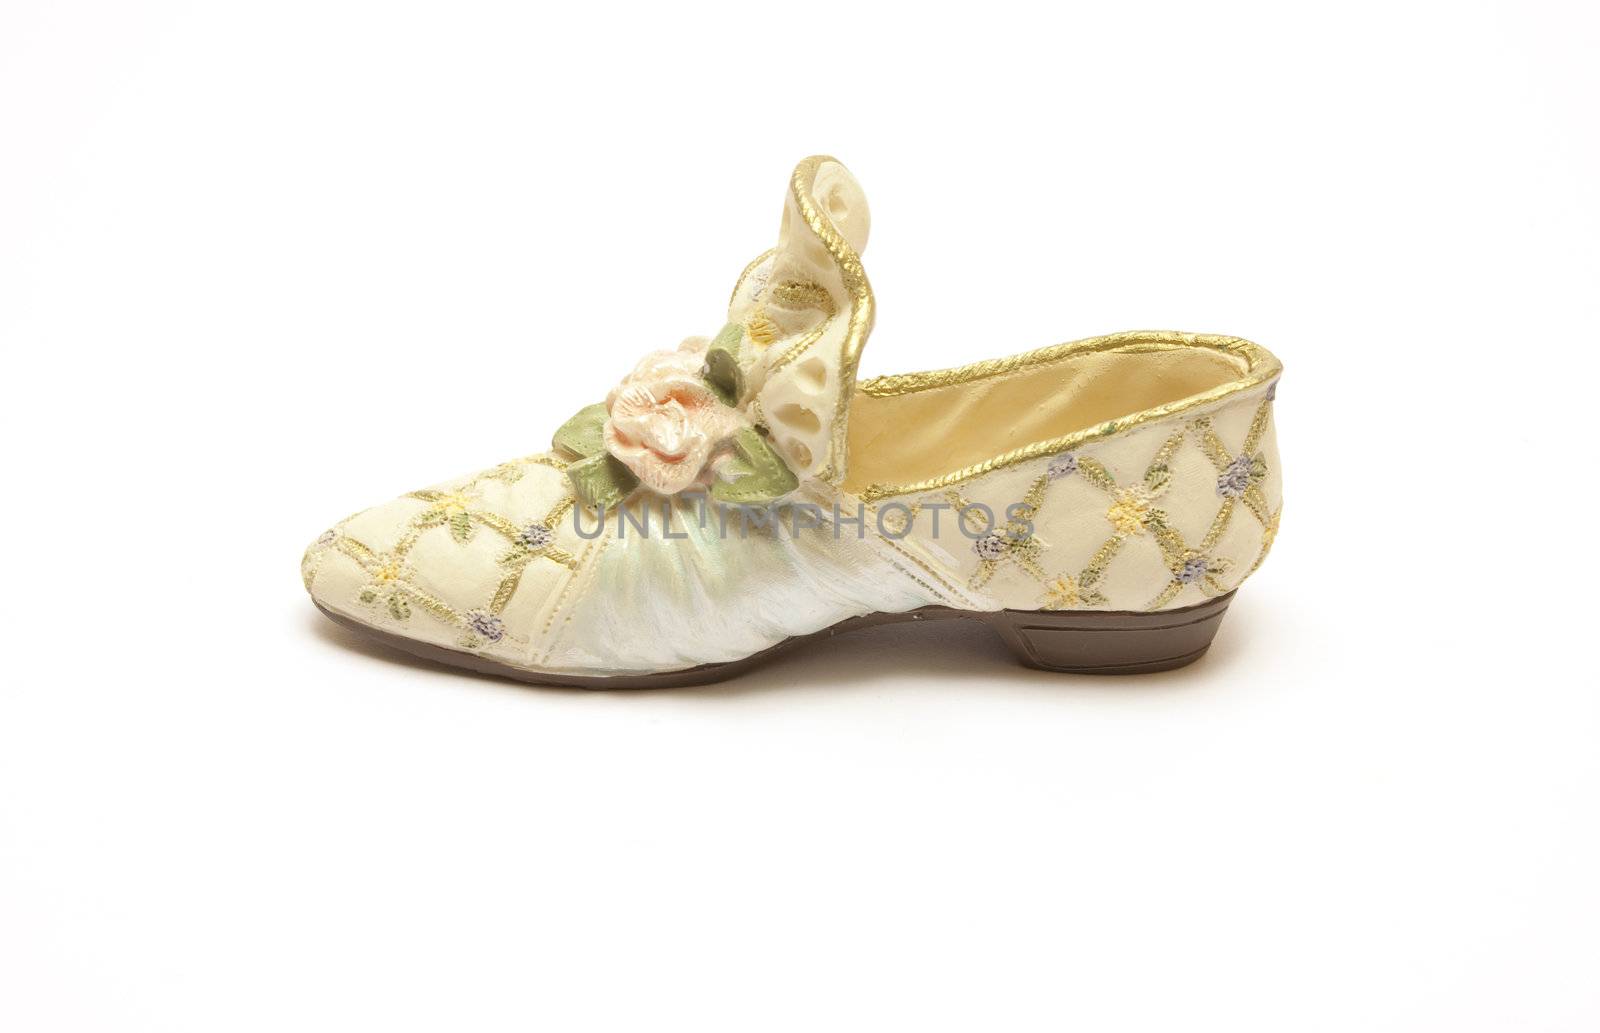 Fancy women shoes by Arsen